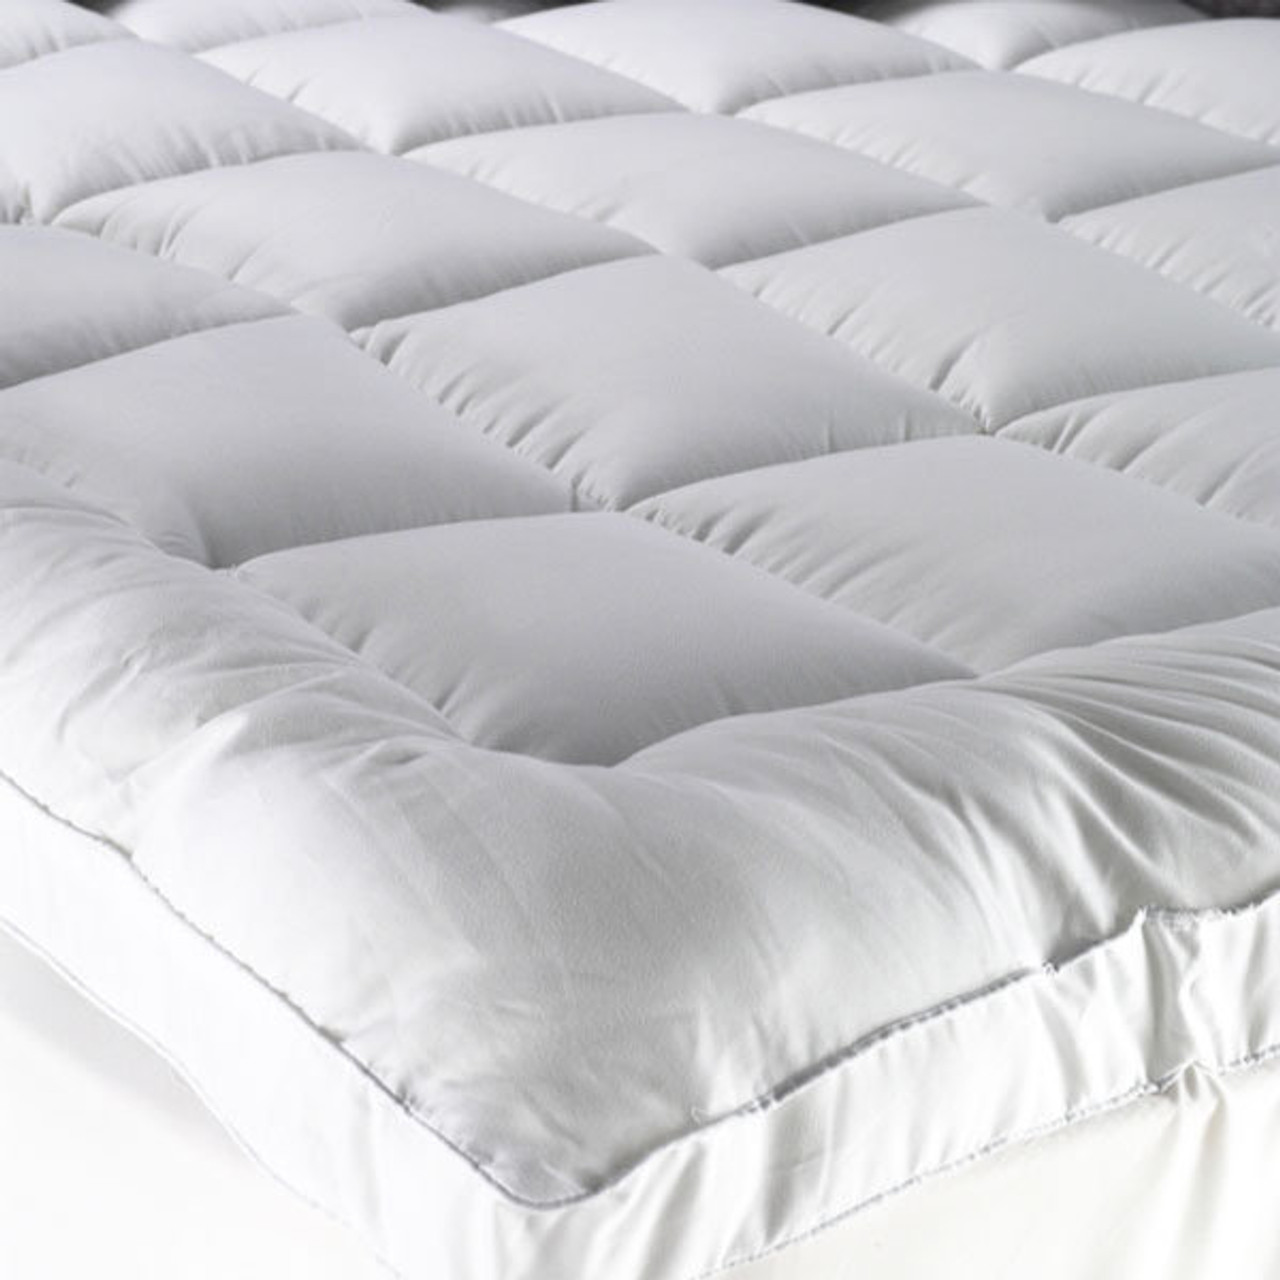 queen bed pillow top mattress